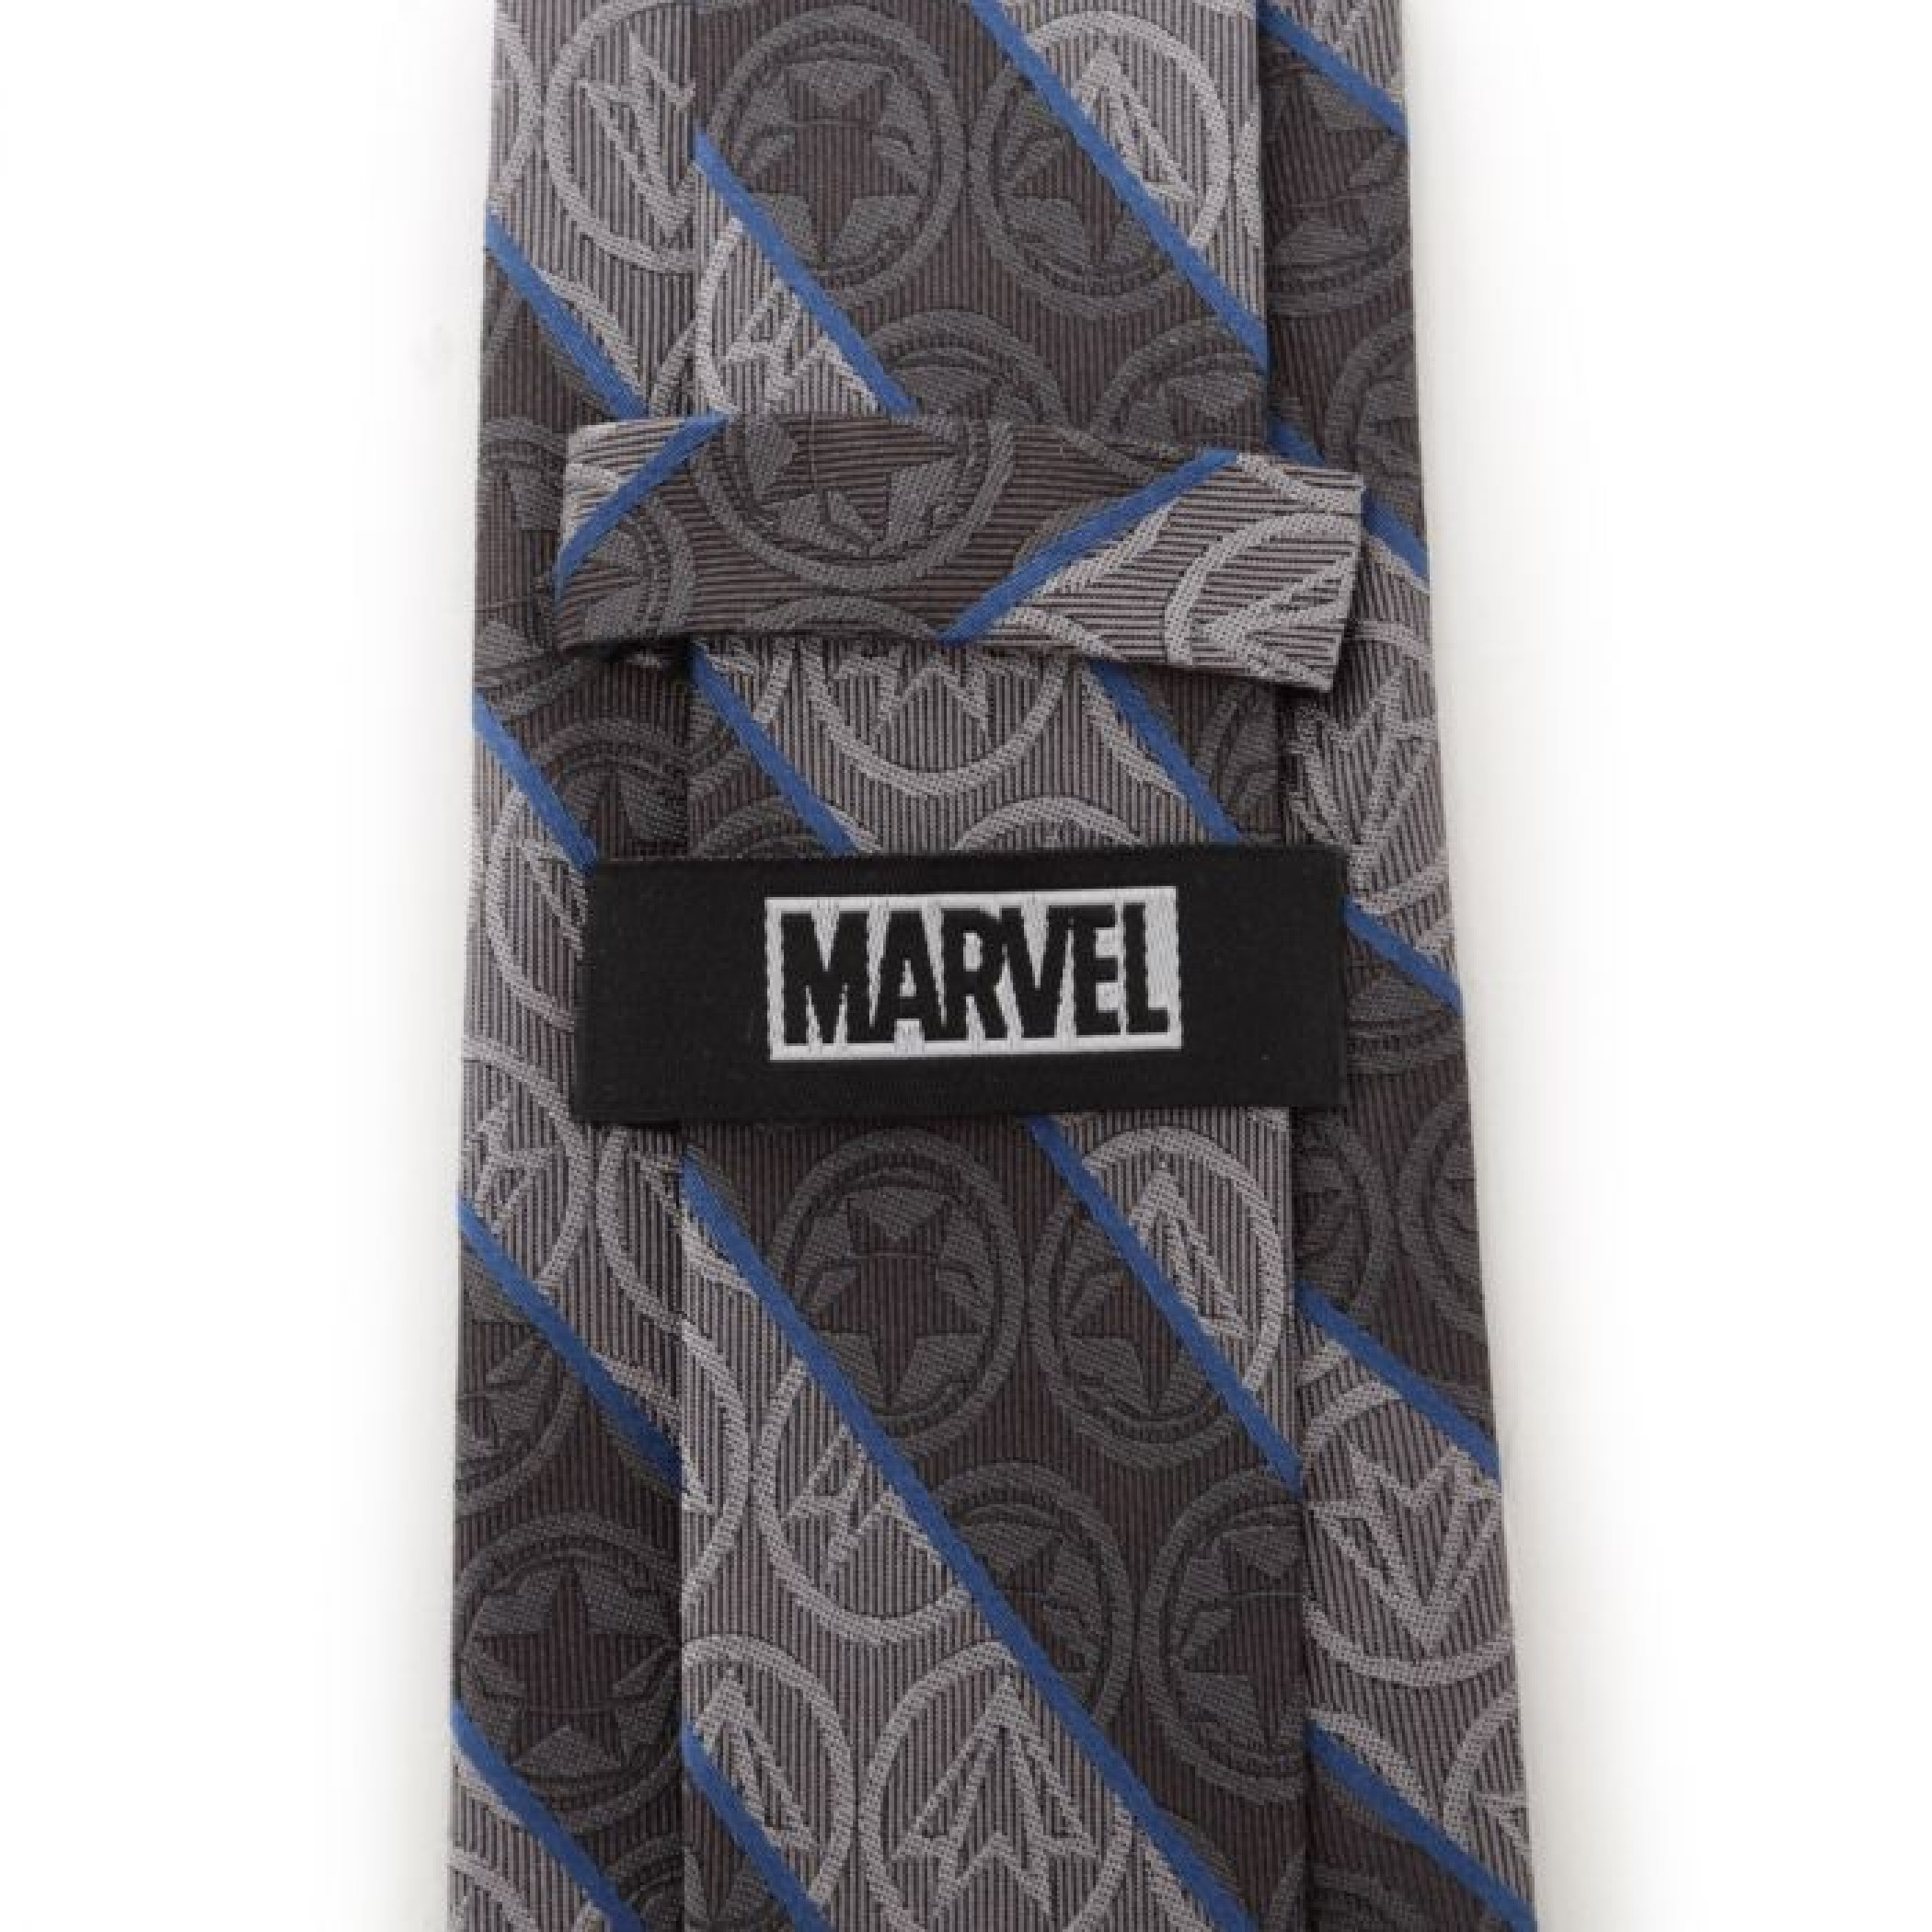 Winter Soldier and Falcon Logos Gray Men's Tie